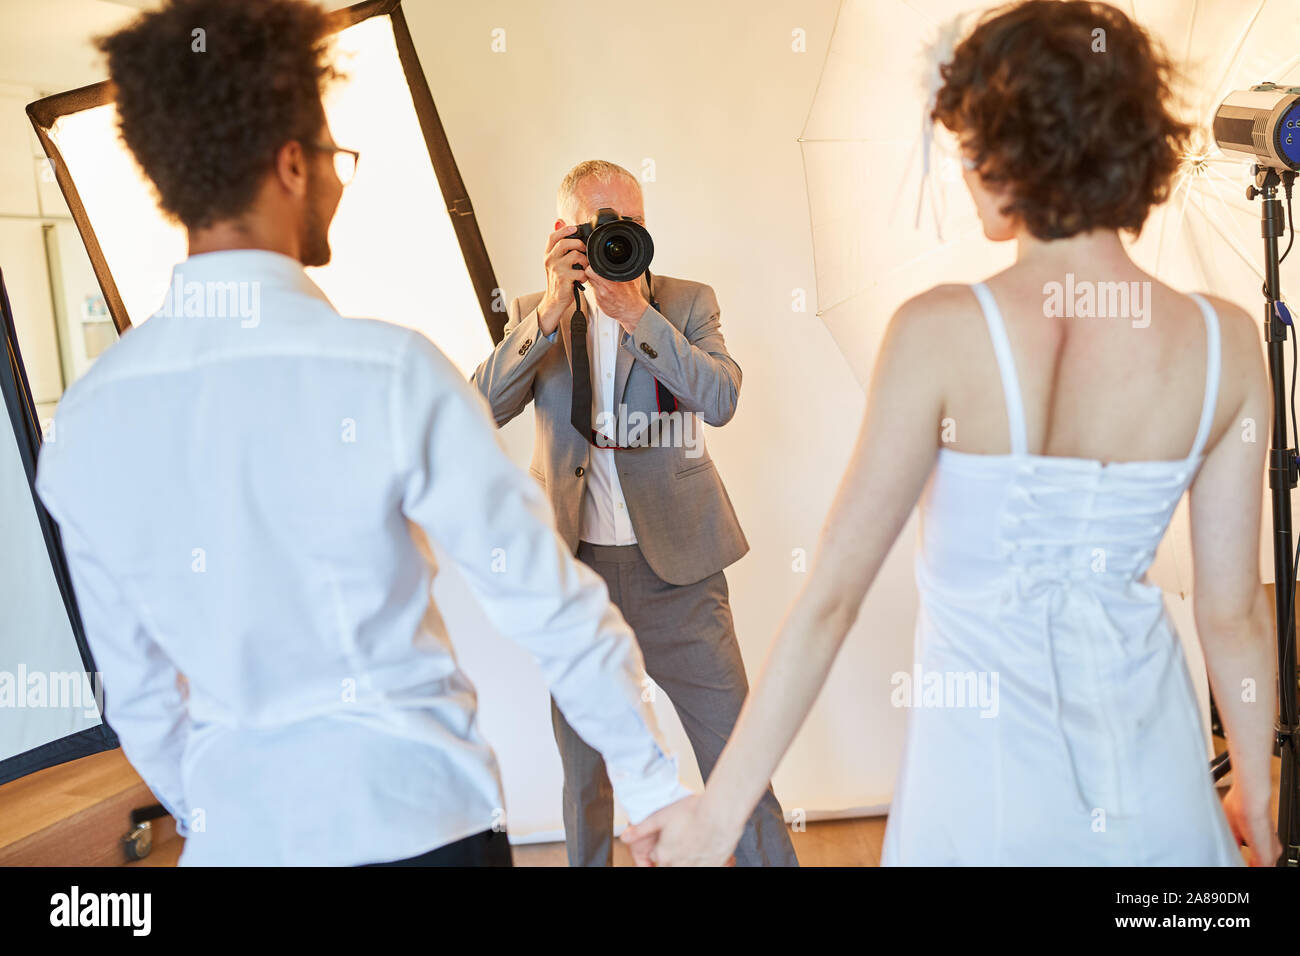 Photographe de mariage prend des photos des mariés le jour du mariage dans le studio photo Banque D'Images